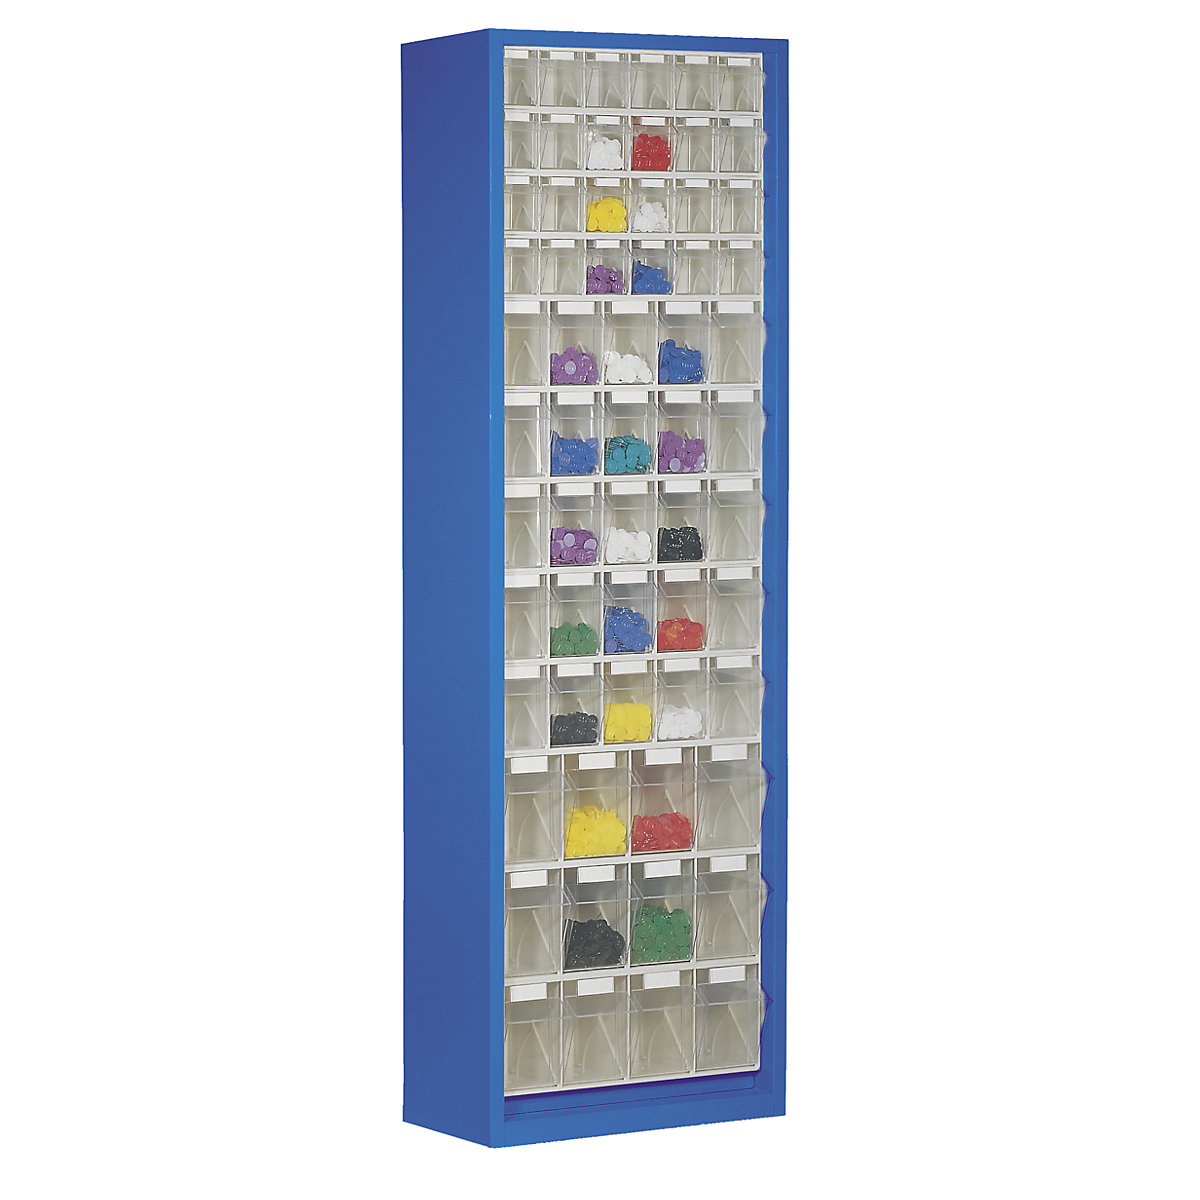 Armario-almacén de chapa de acero, con 61 cajas plegables transparentes, azul genciana